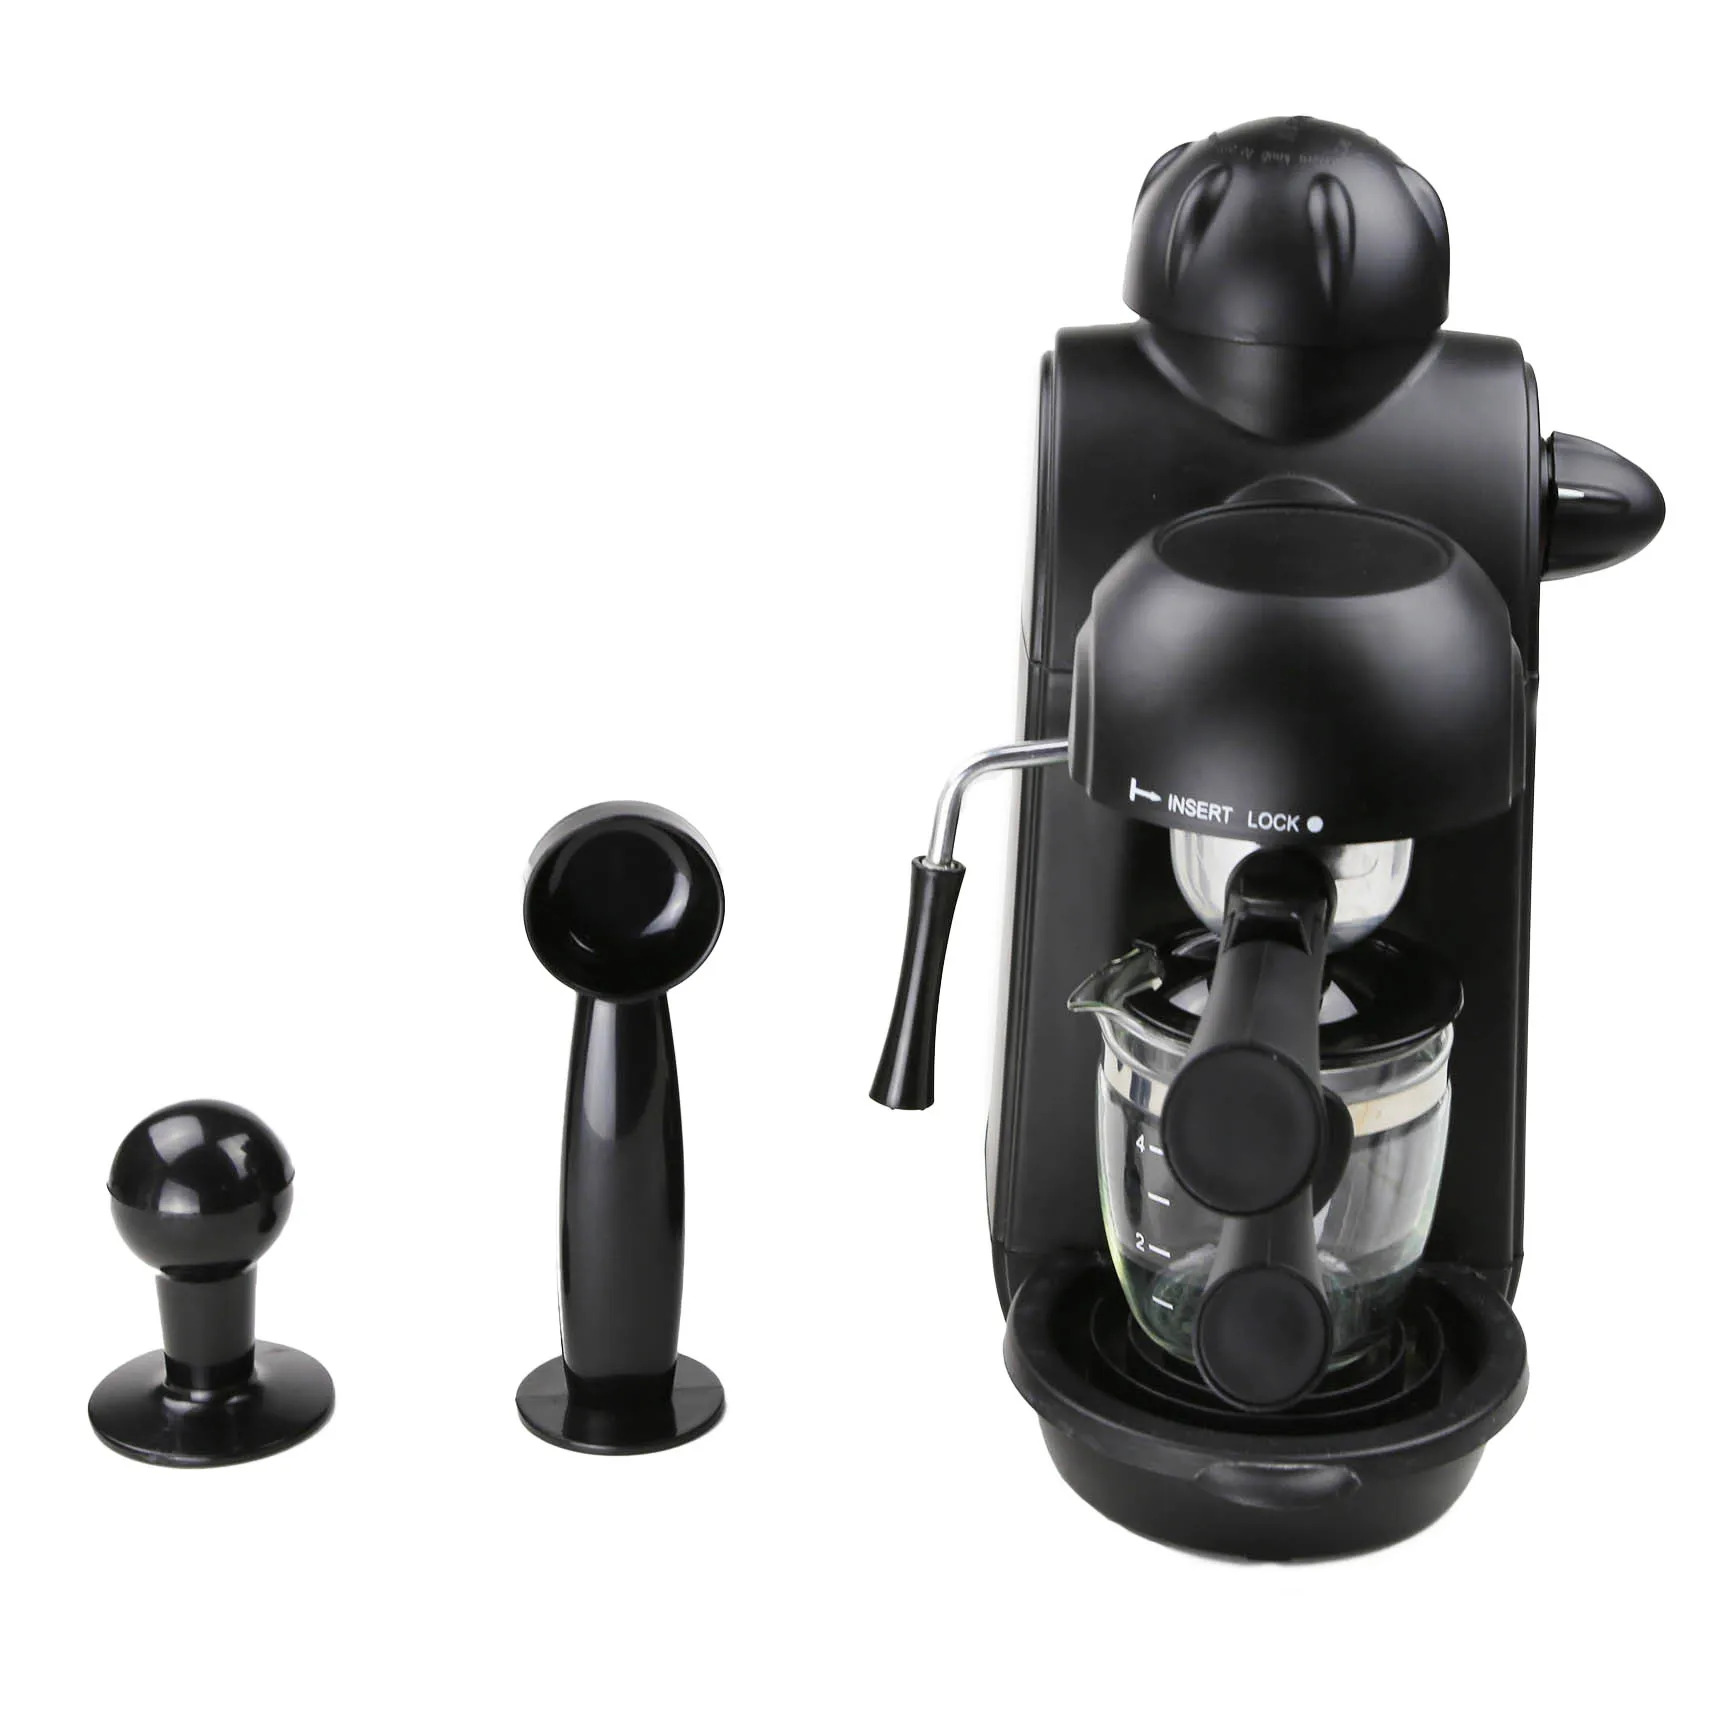 

800W 240ml Coffee Maker 220V 5 Bar Pressure Semi-Automatic Personal Italian Espresso Coffee Machine with Cappuccino Milk Foamer